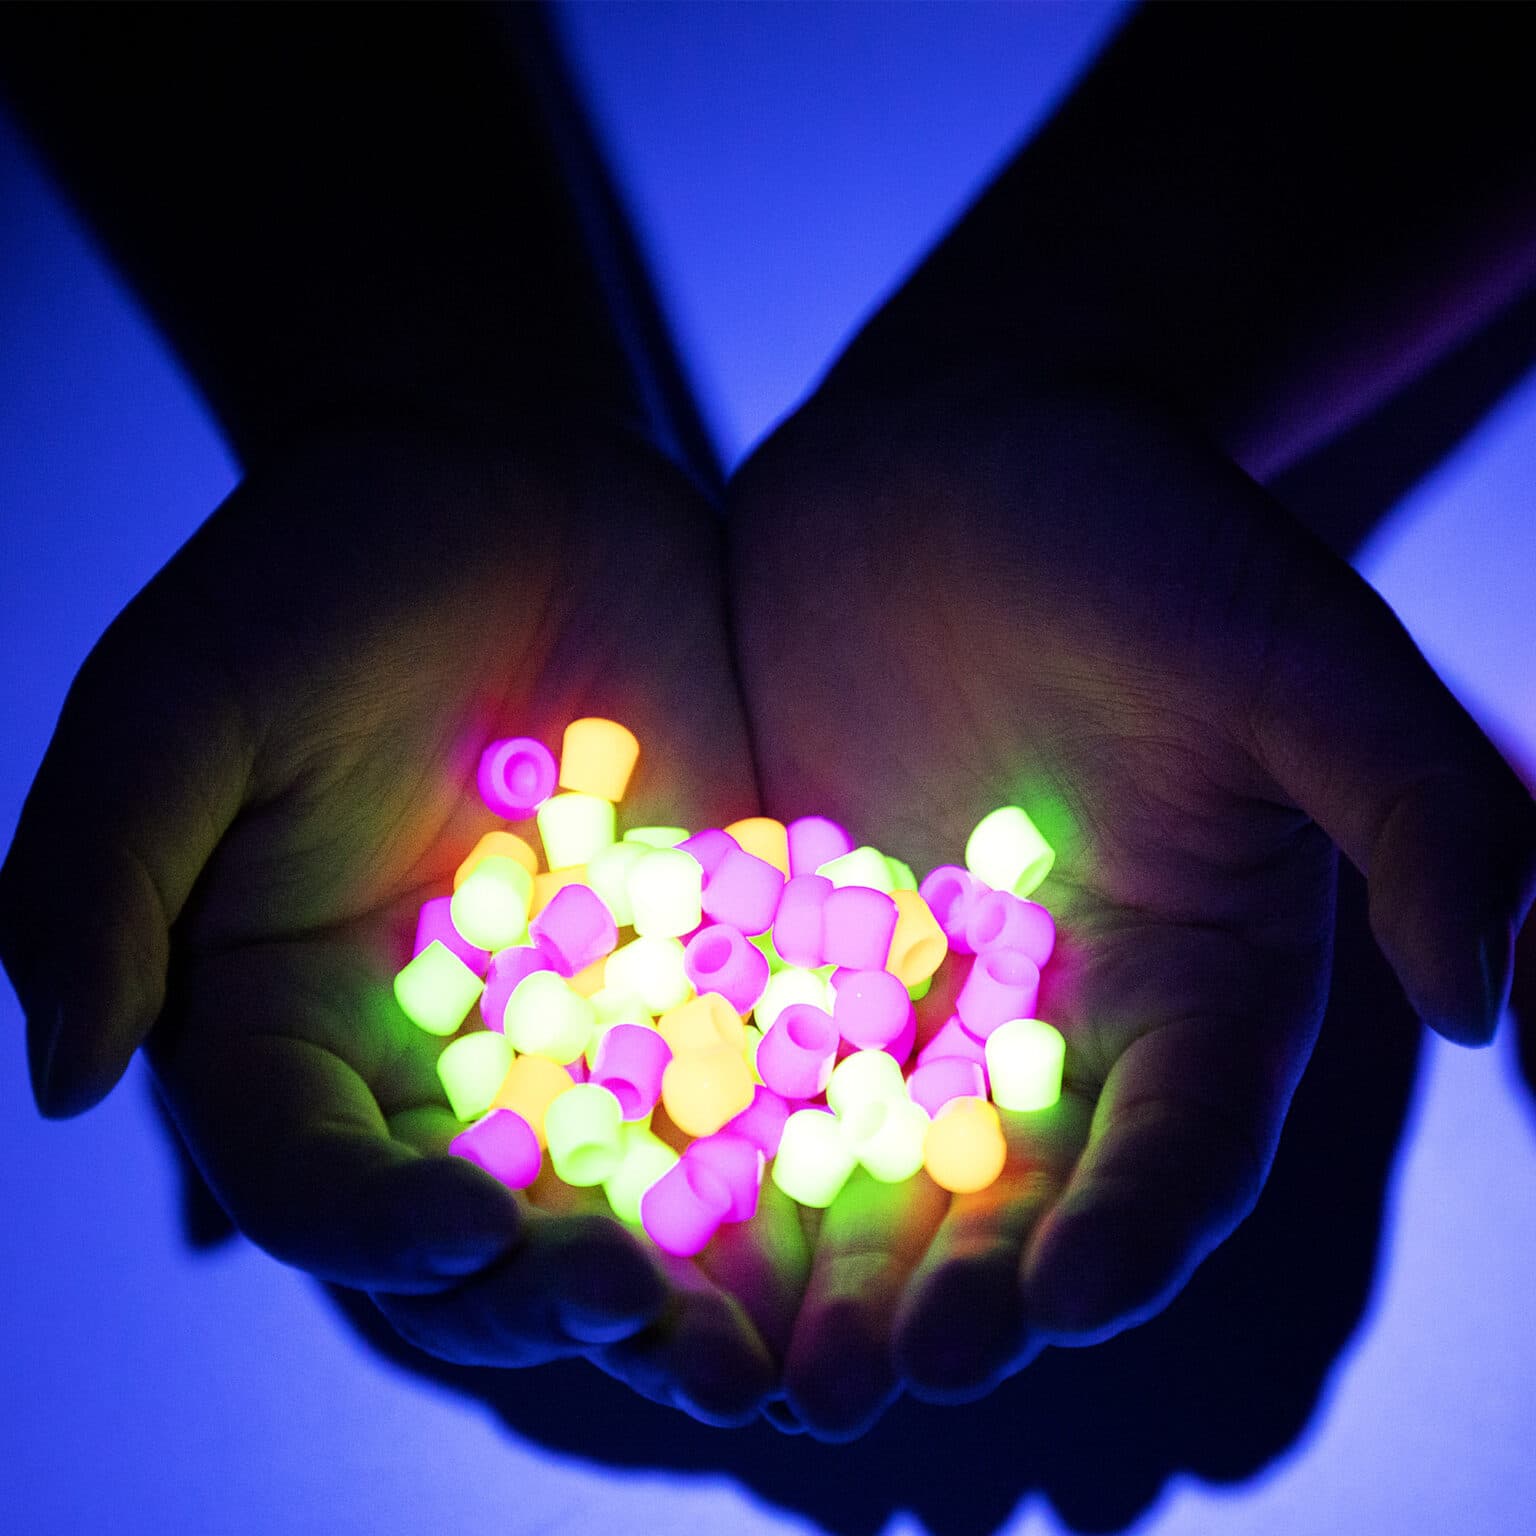 Schylling Brite Ball - Neon Glow-SCHYLLING-Little Giant Kidz